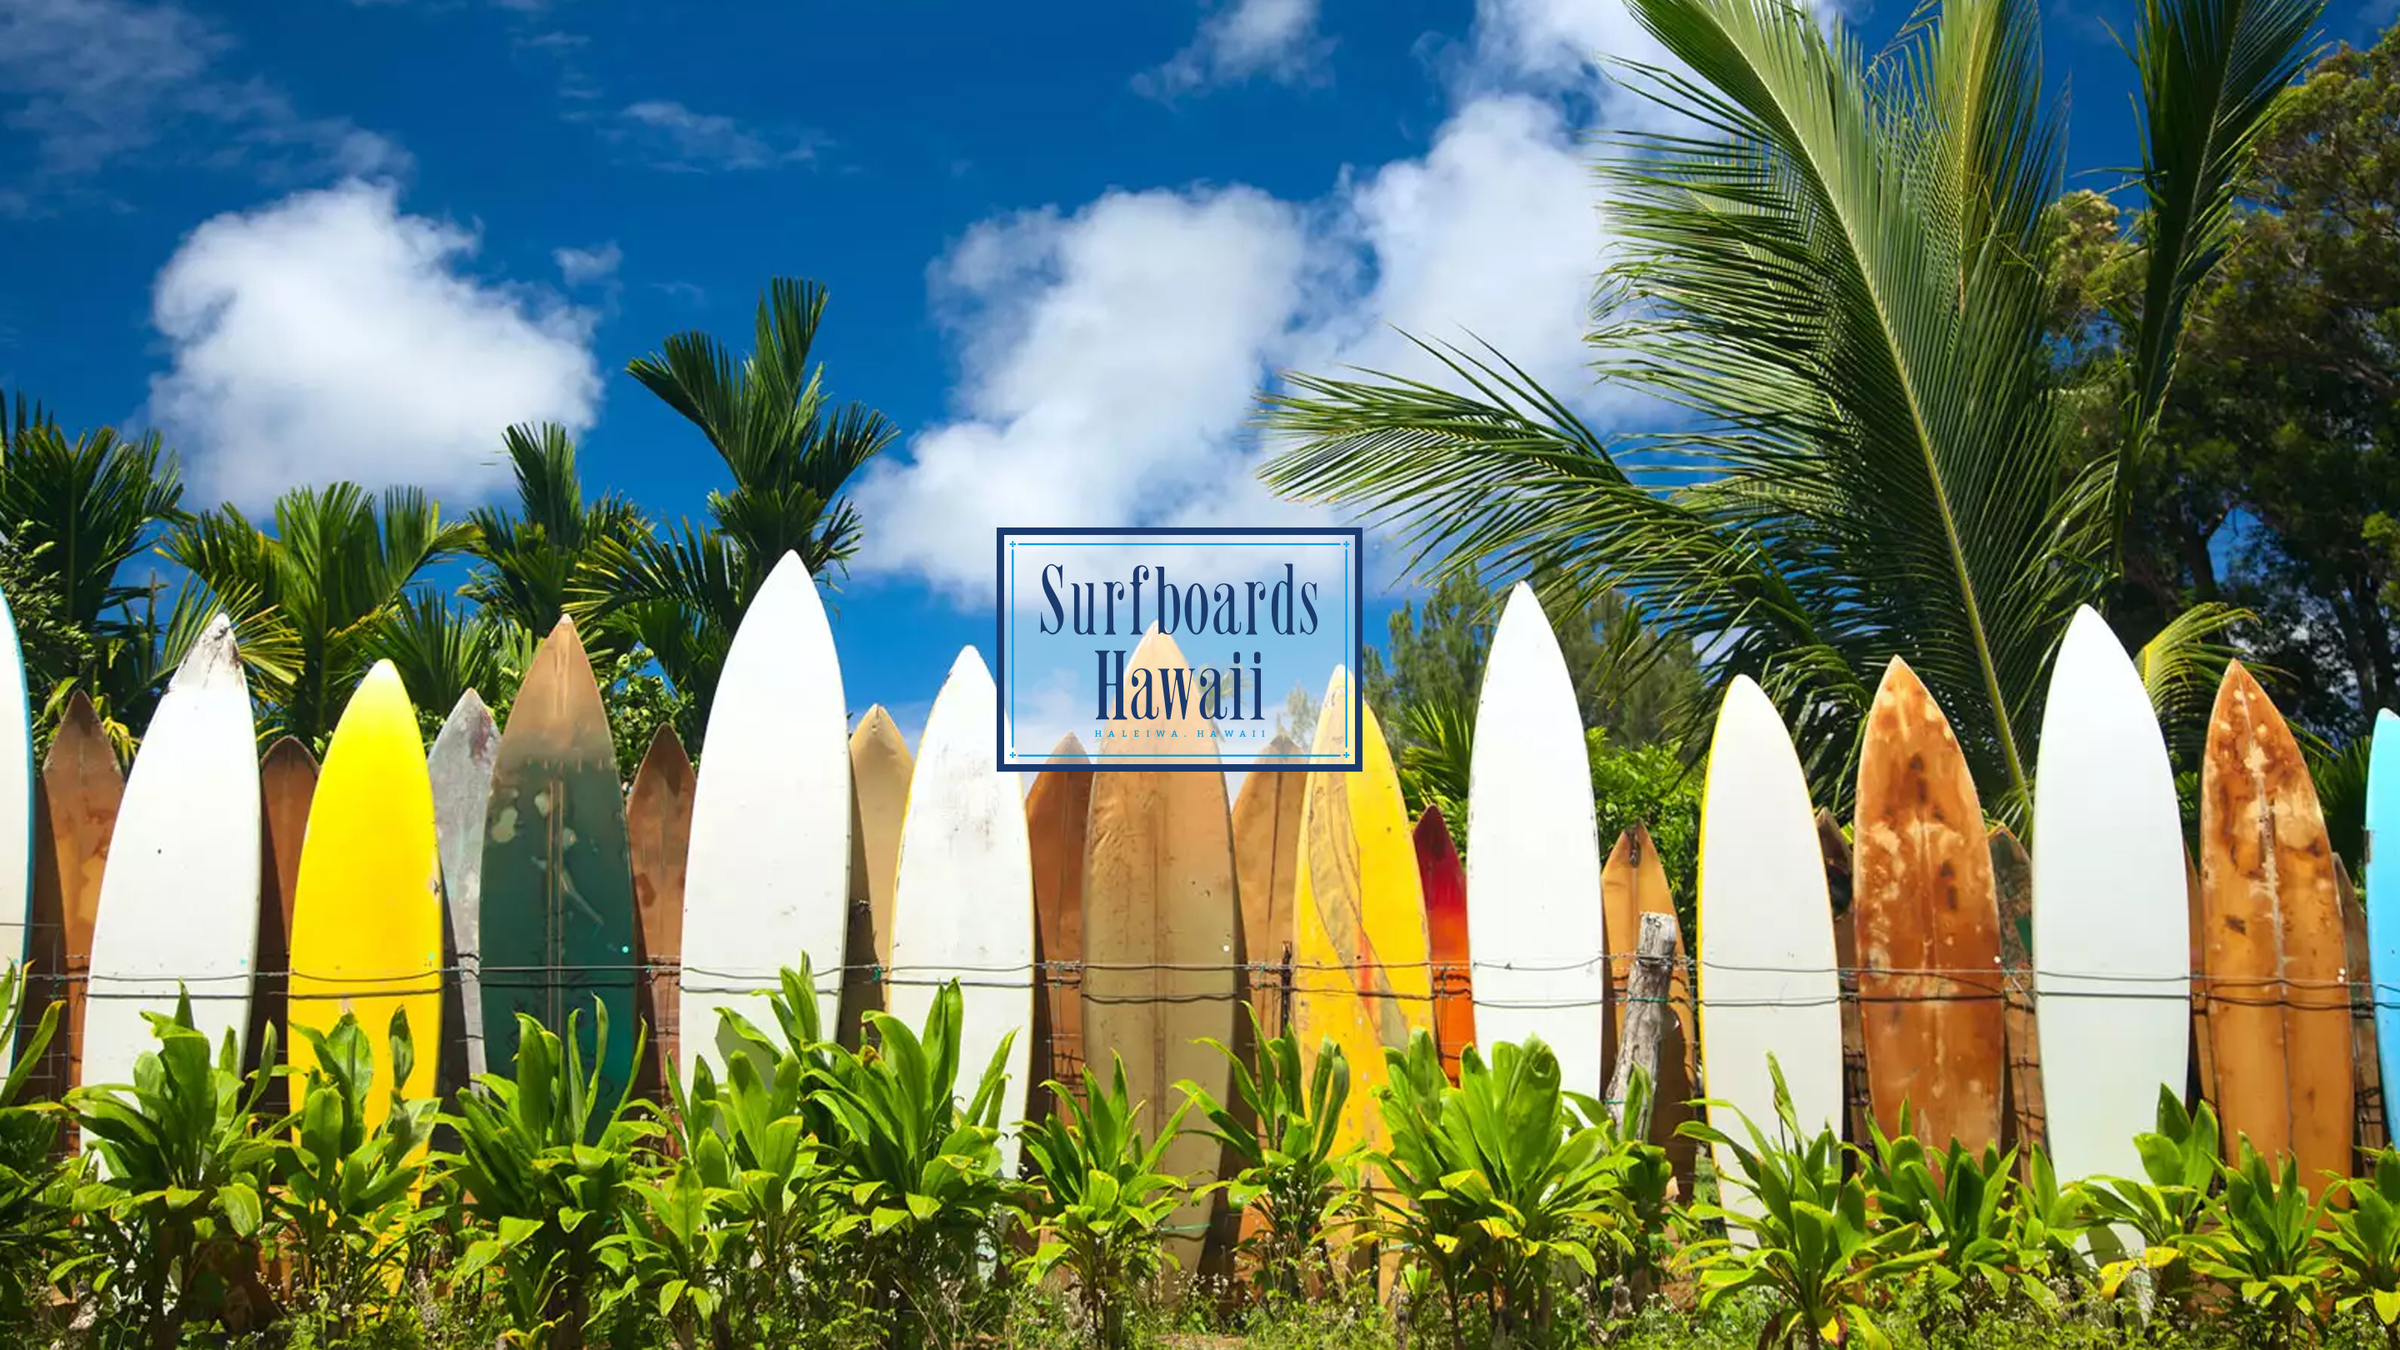 Surfboards Hawaii